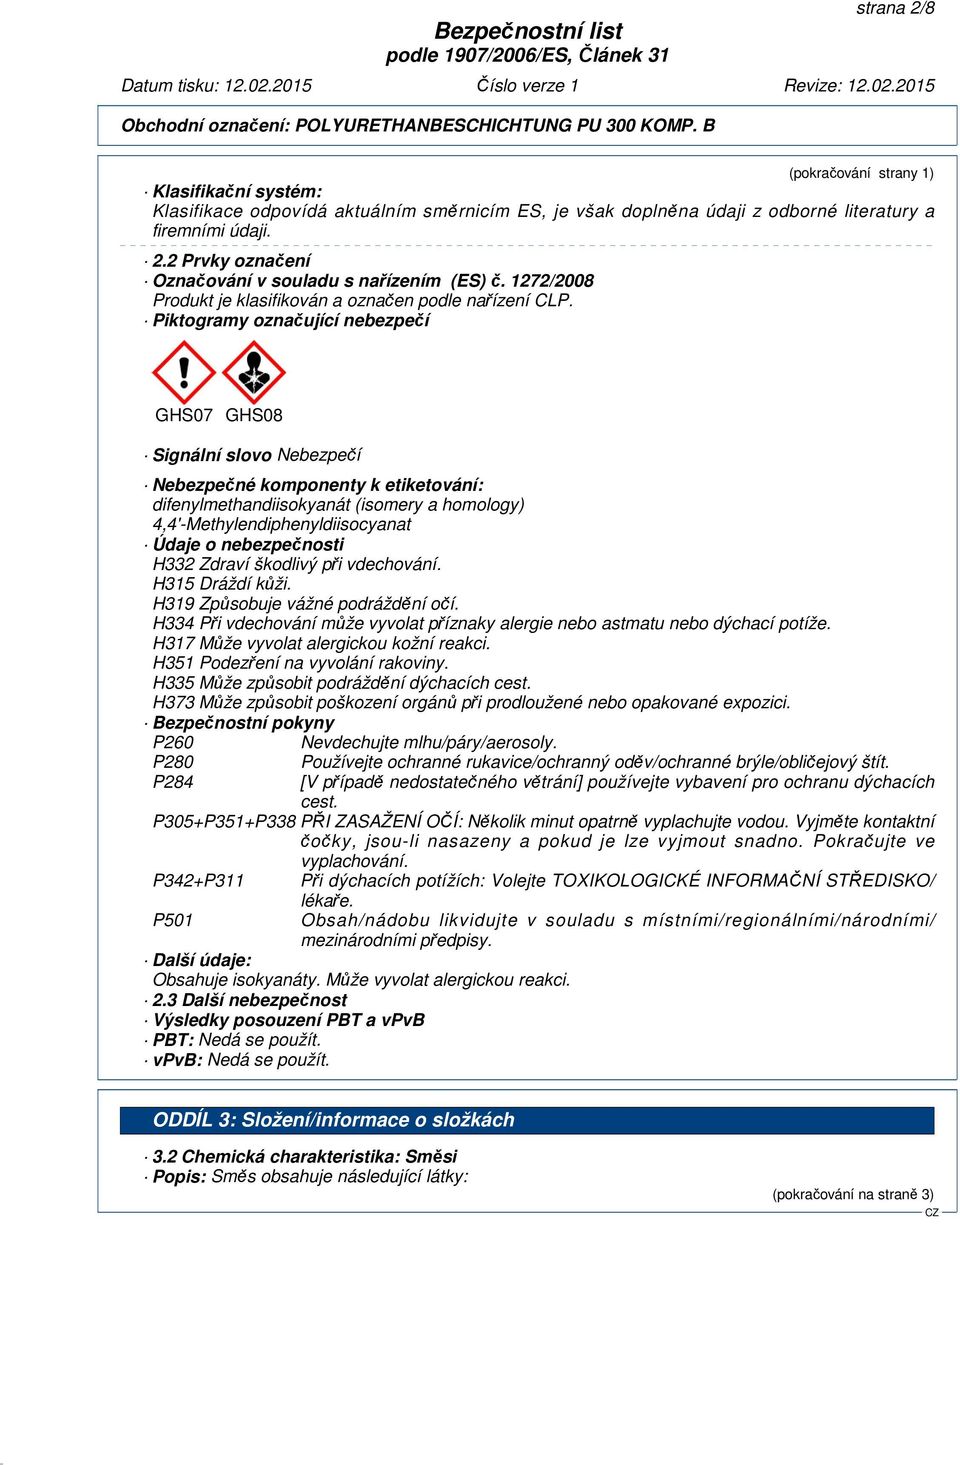 Piktogramy označující nebezpečí GHS07 GHS08 Signální slovo Nebezpečí Nebezpečné komponenty k etiketování: difenylmethandiisokyanát (isomery a homology) Údaje o nebezpečnosti H332 Zdraví škodlivý při